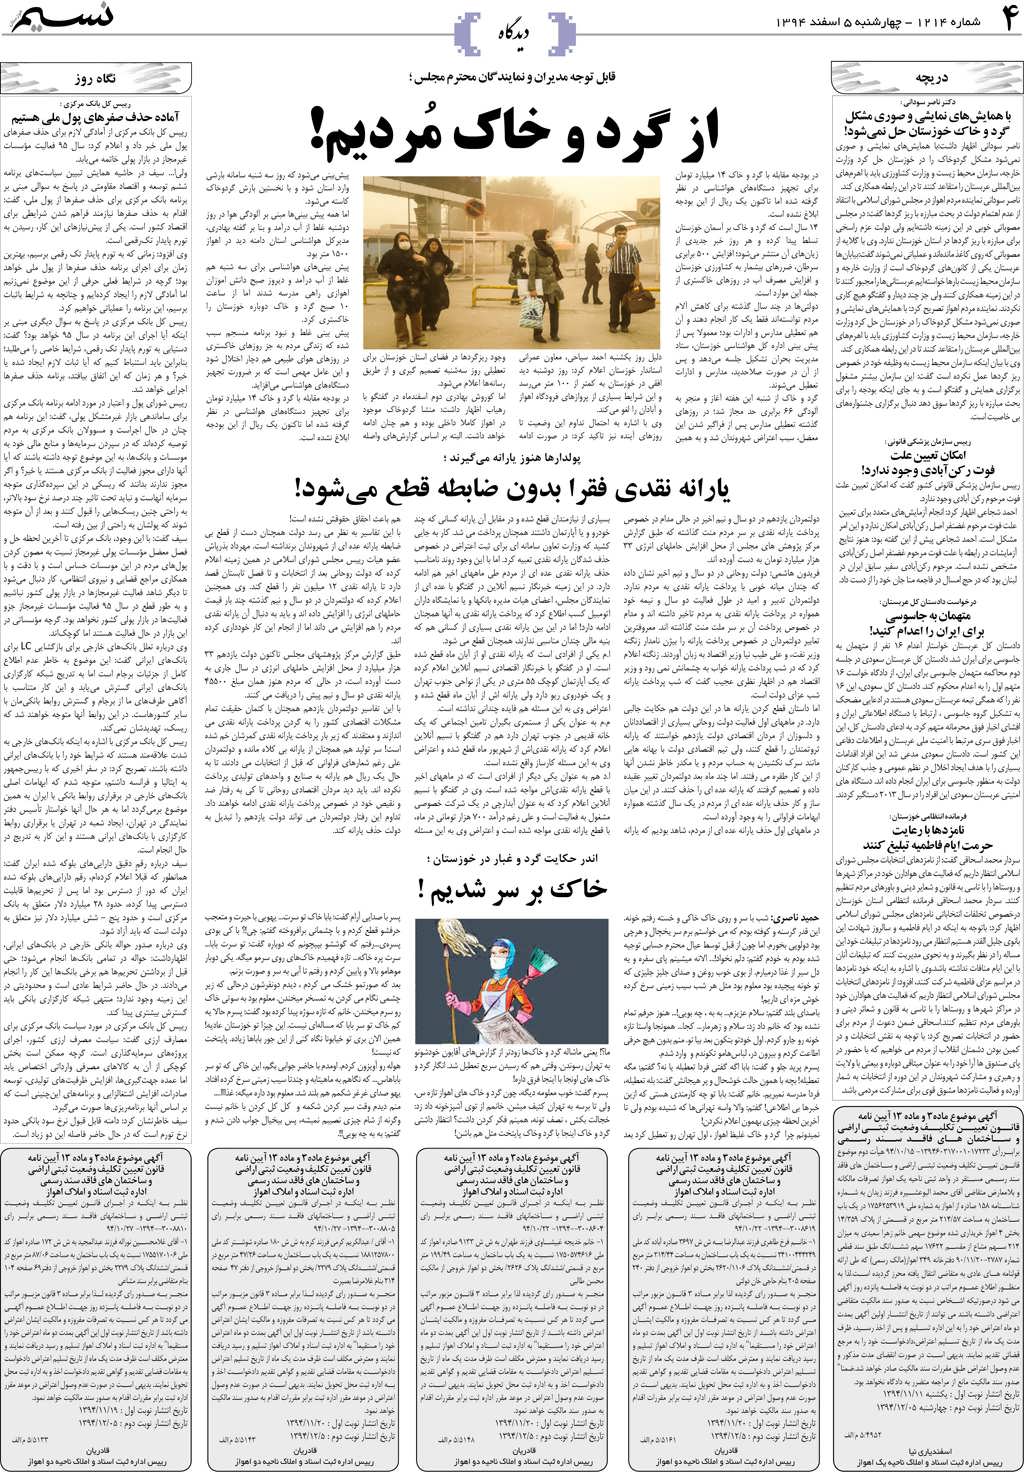 صفحه دیدگاه روزنامه نسیم شماره 1214